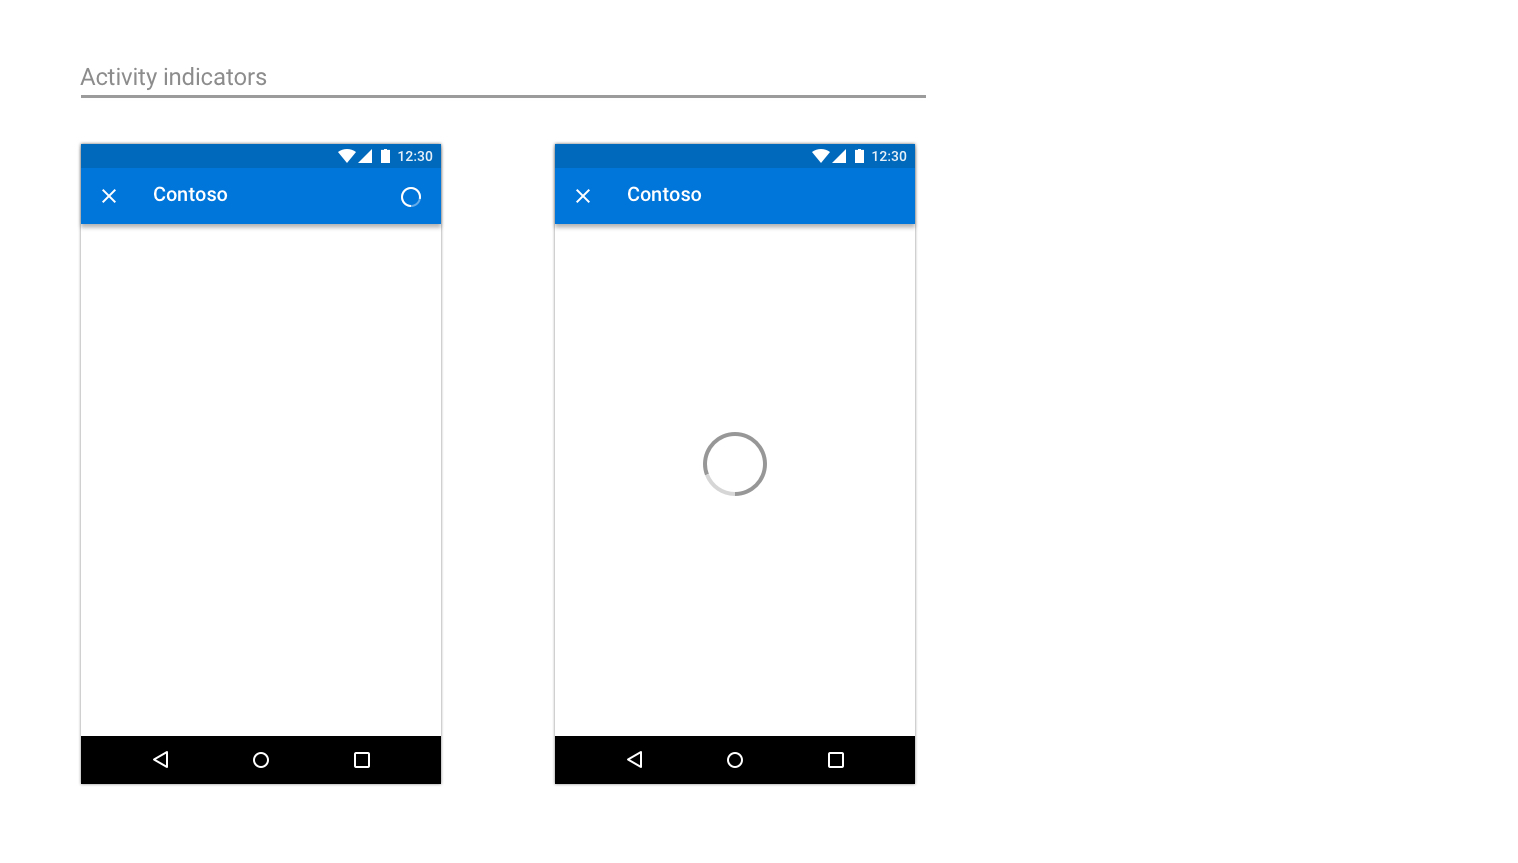 Exemples illustrant une barre de progression et un indicateur d’activité sur Android.